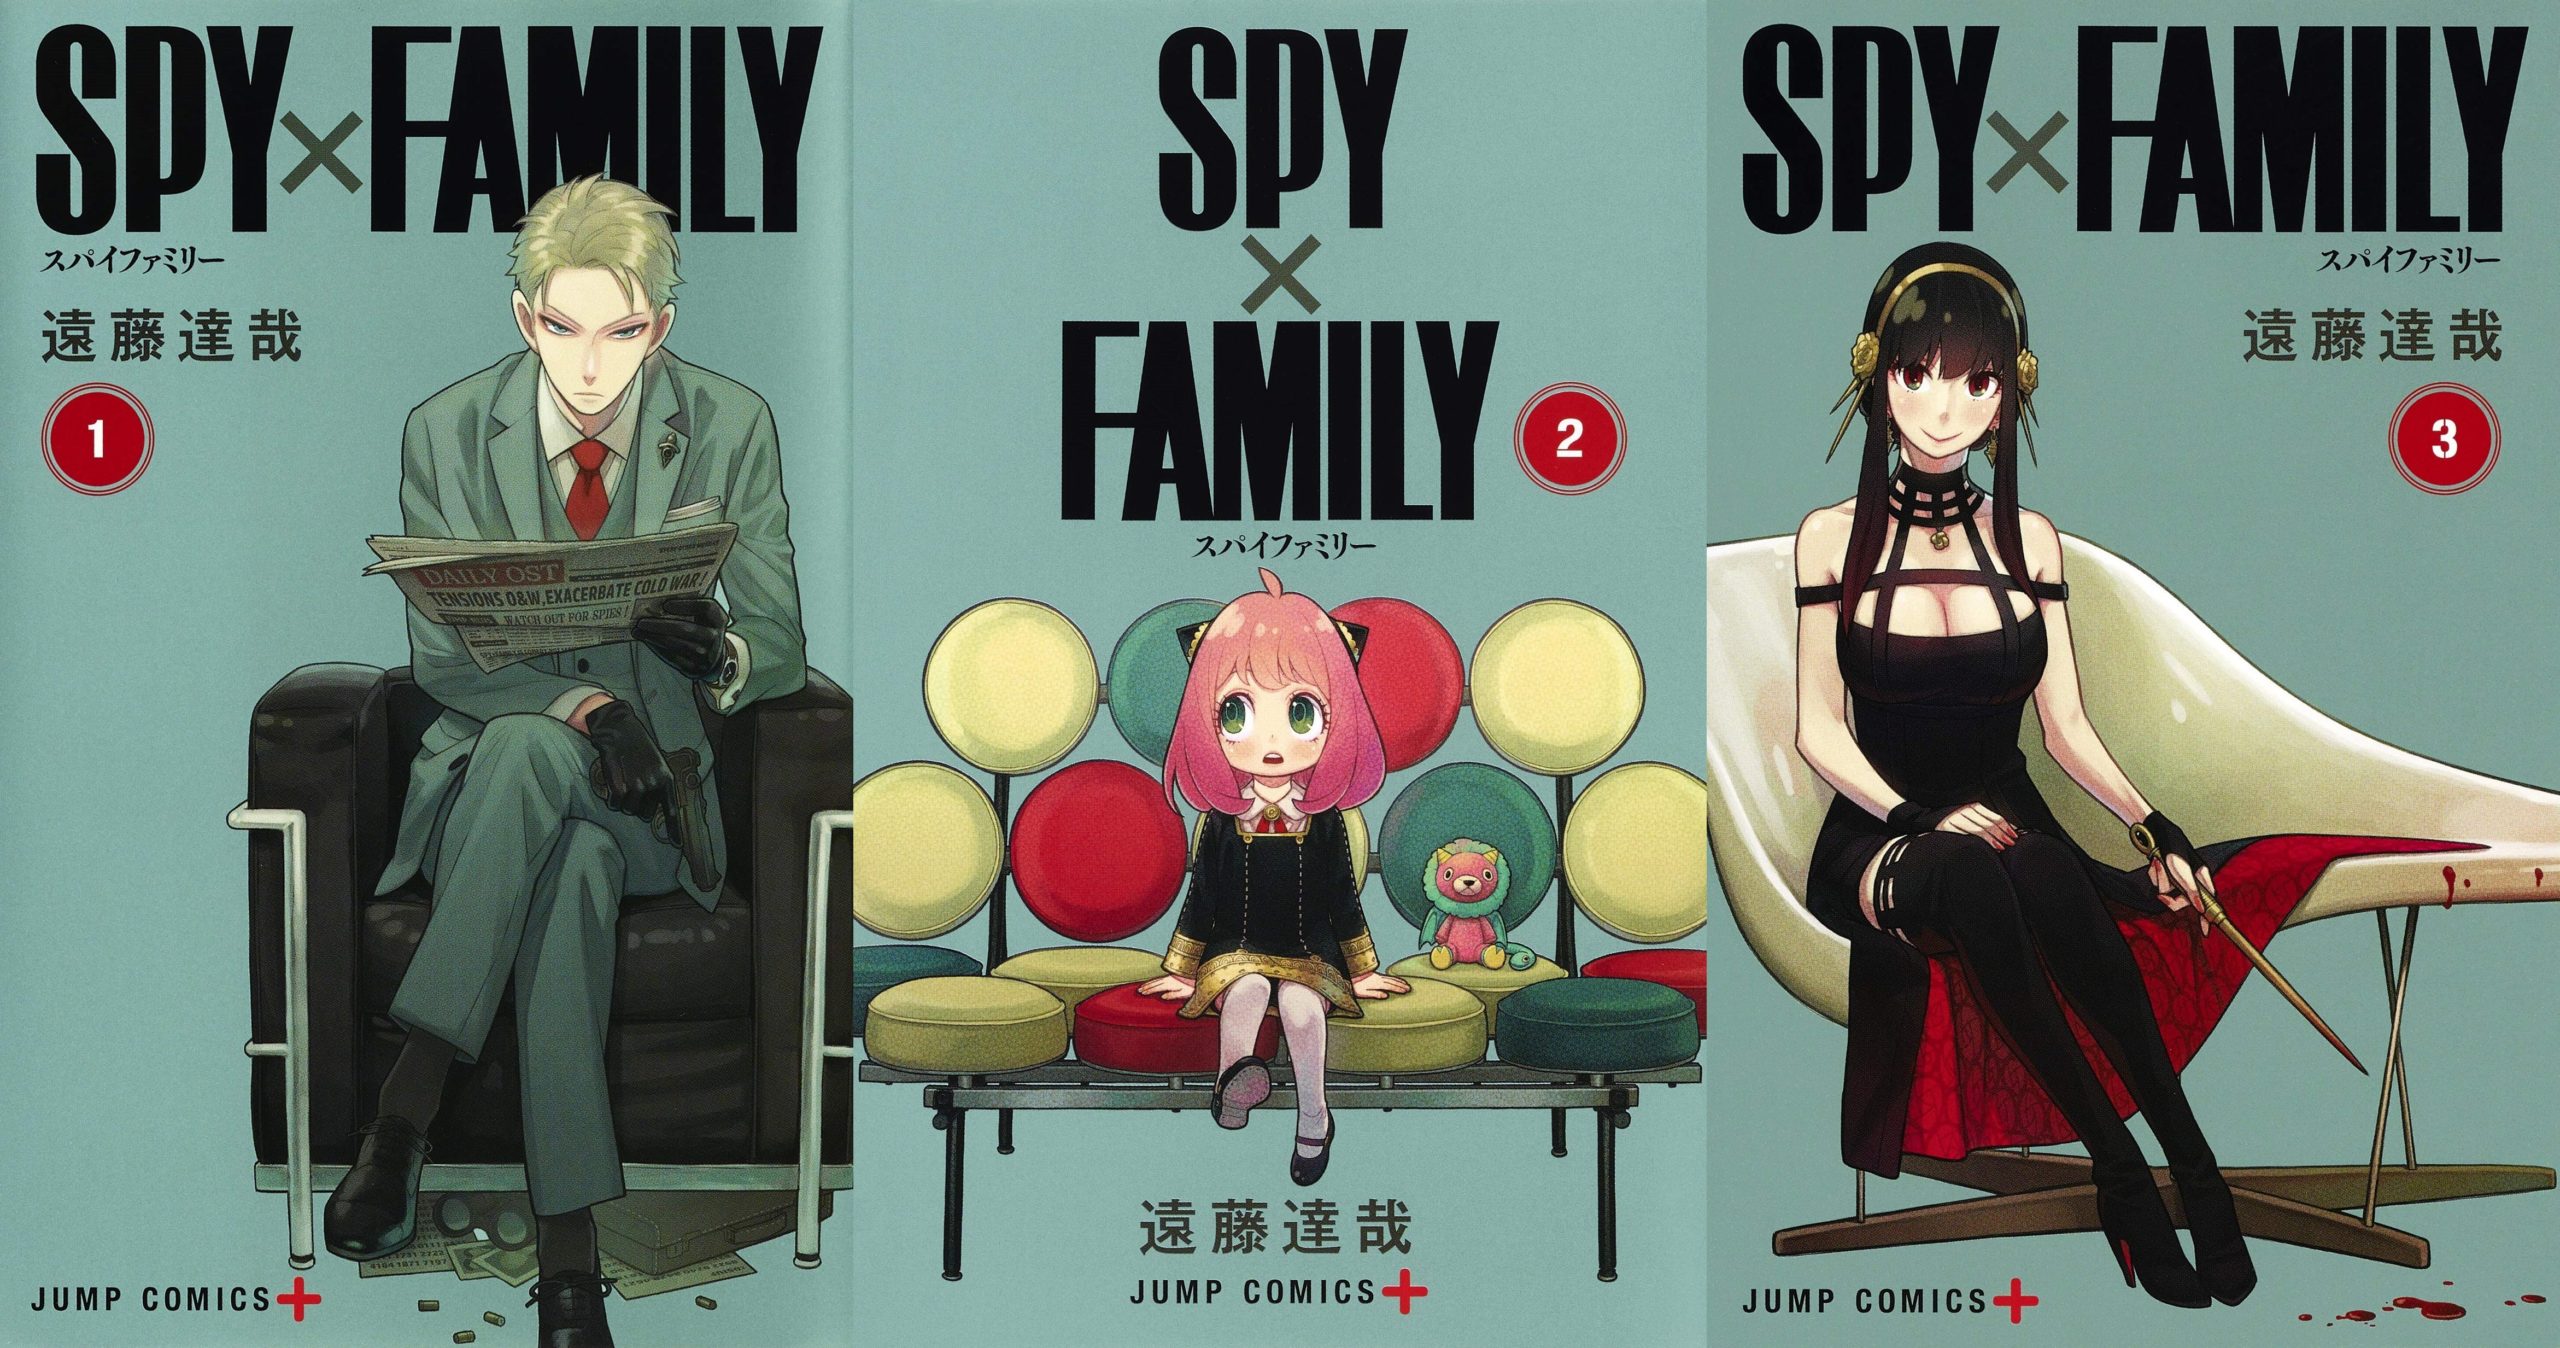 Otaku Critica Filme Adulto de SPYxFAMILY por não ser fiel ao Anime